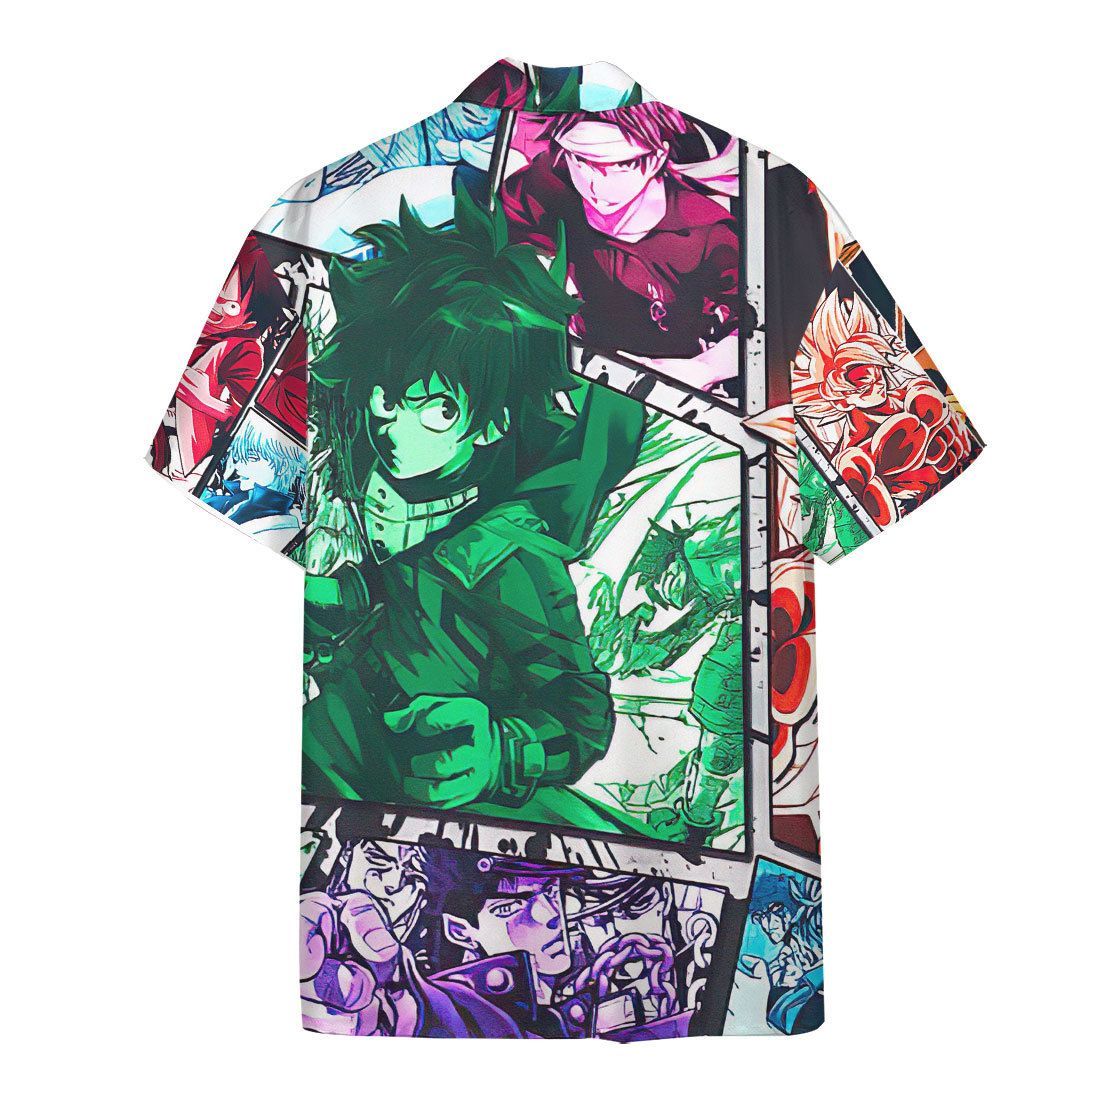 Anime Collection Hawaii Shirt 3